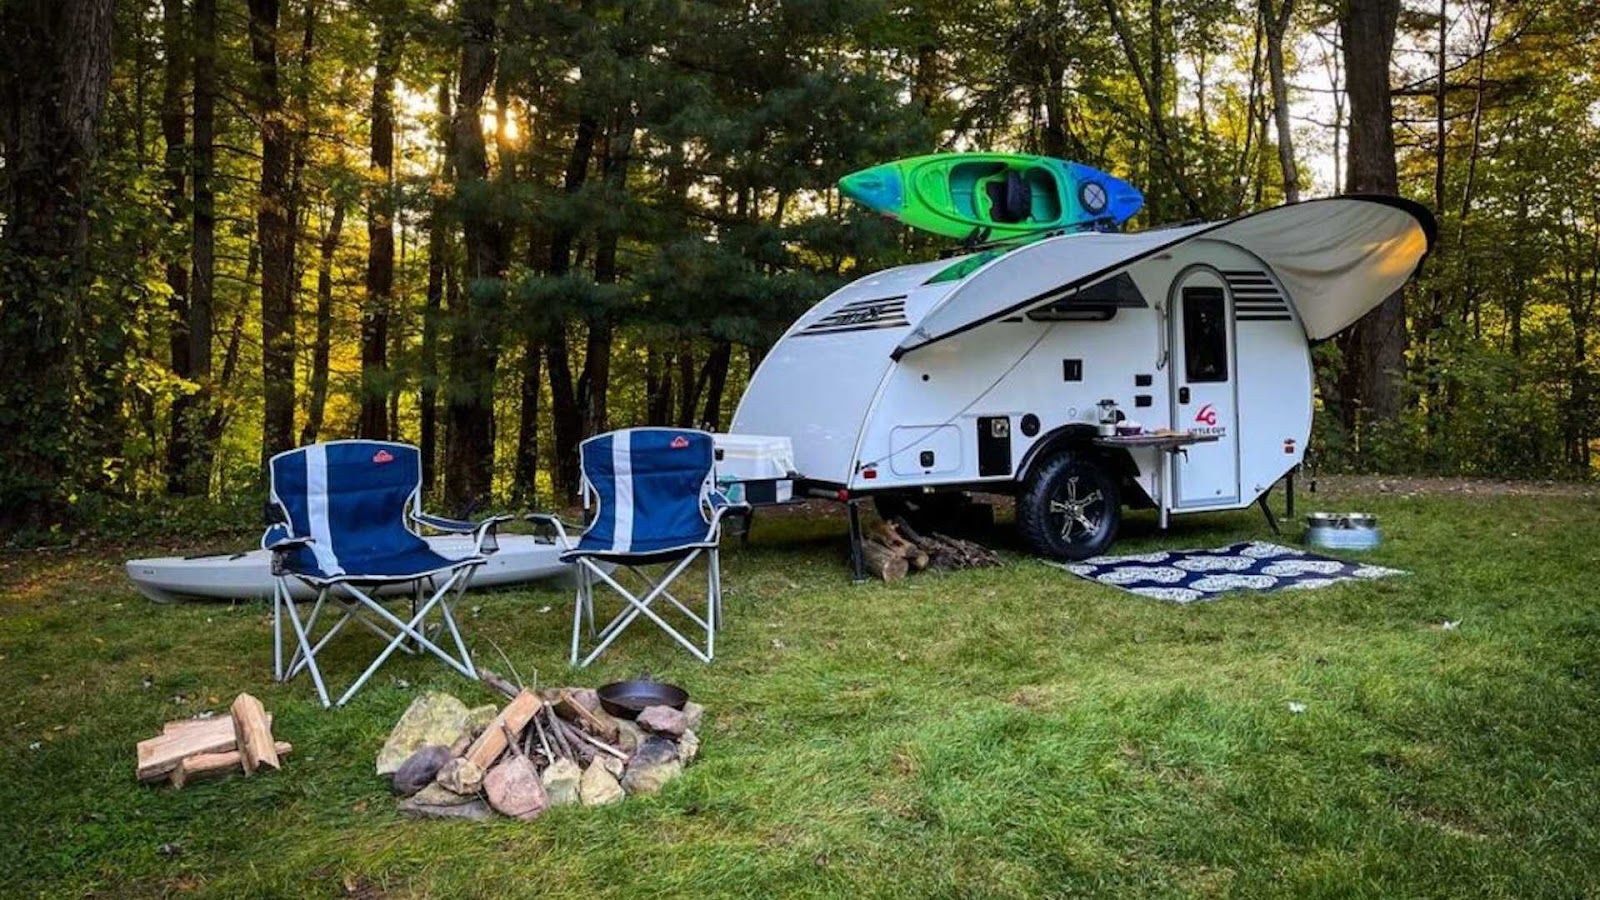 小小的 Micro Max 露營拖車也可輕鬆來場精彩的露營探險呢